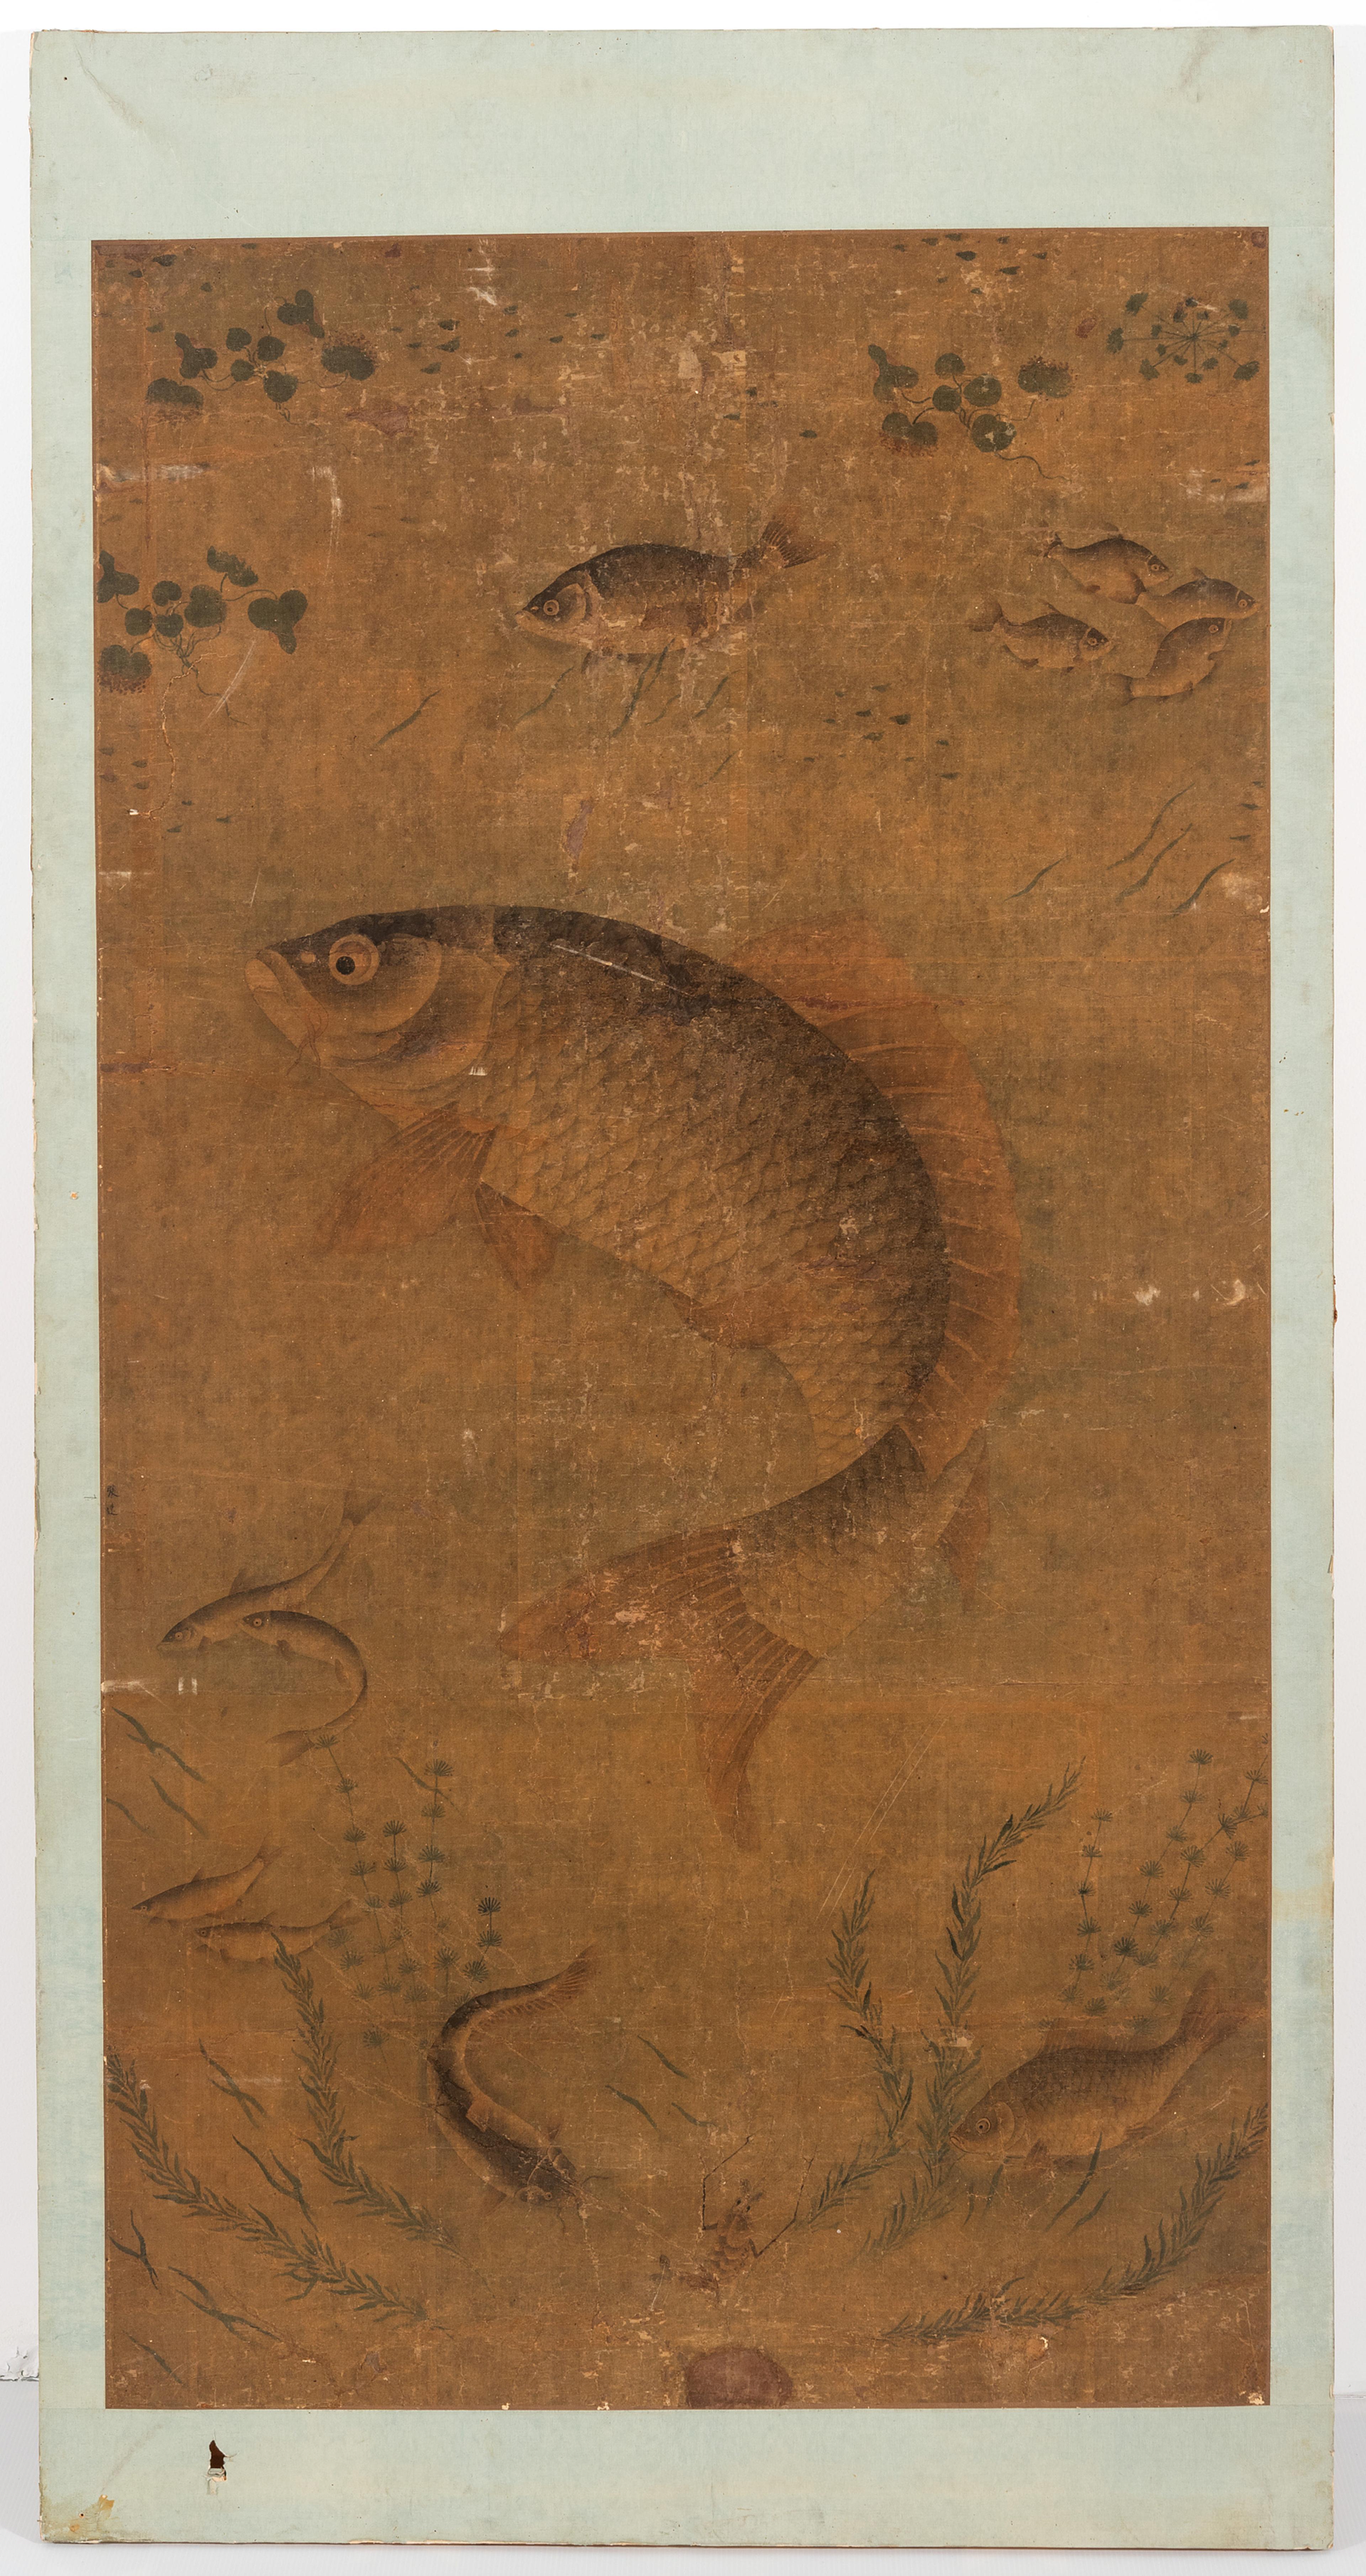 Et kinesisk maleri av en fisk, omgitt av alger